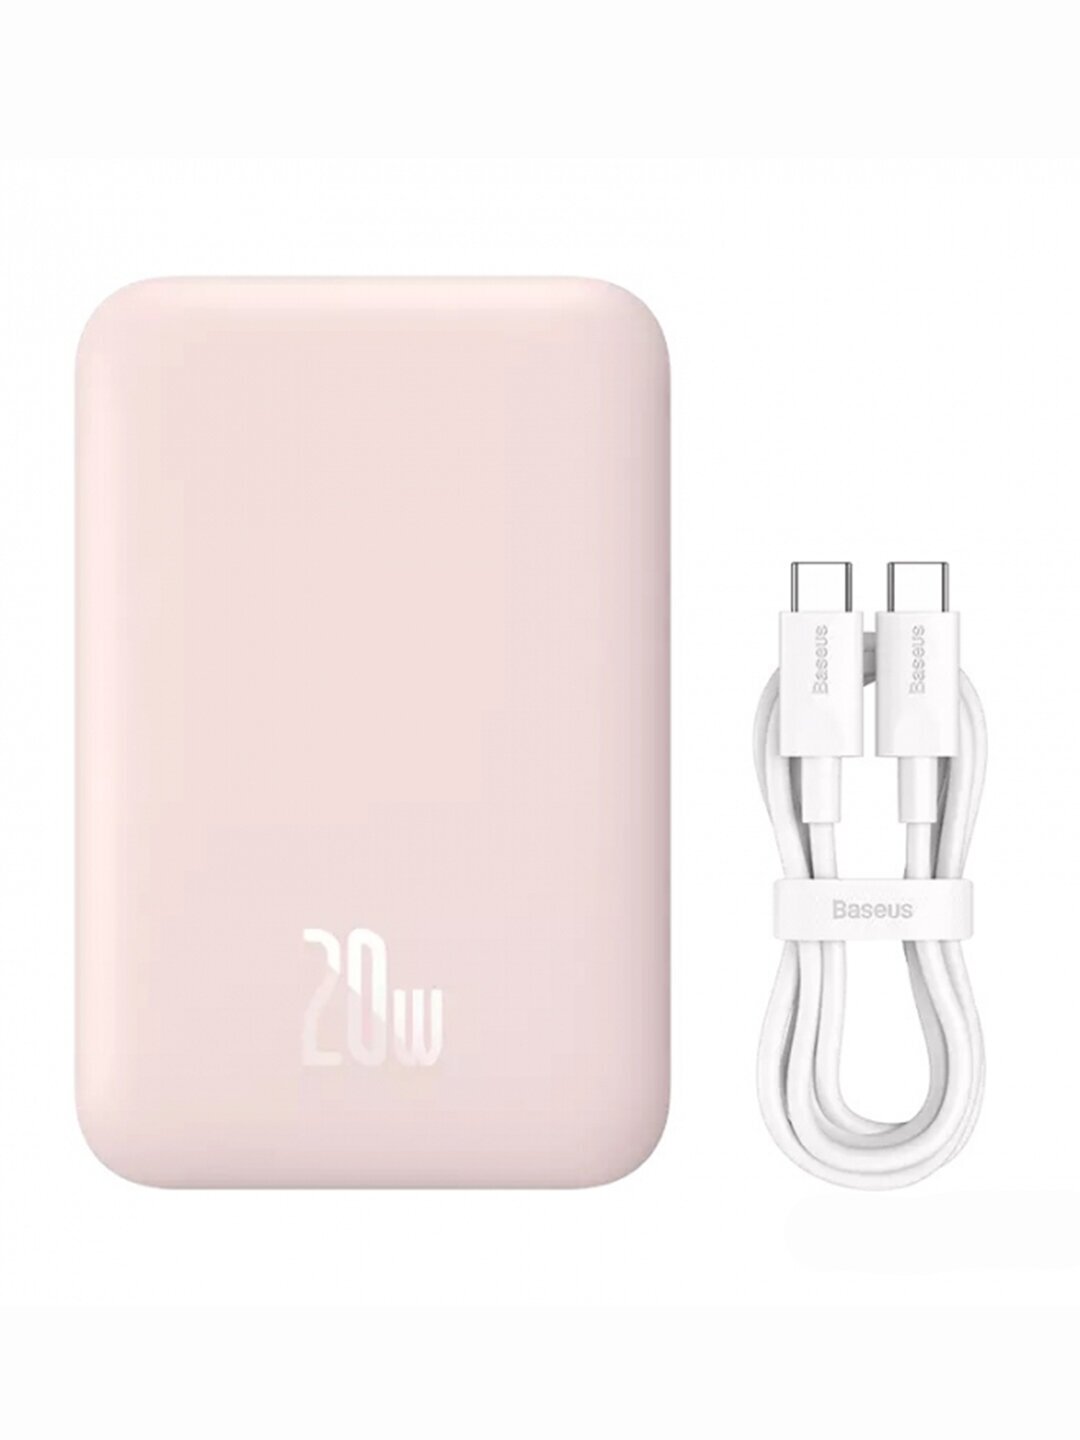 Внешний аккумулятор с поддержкой беспроводной зарядки Xiaomi Baseus Magnetic Wireless Charging Power Bank 10000 mAh 20W Pink (PPCXM10)